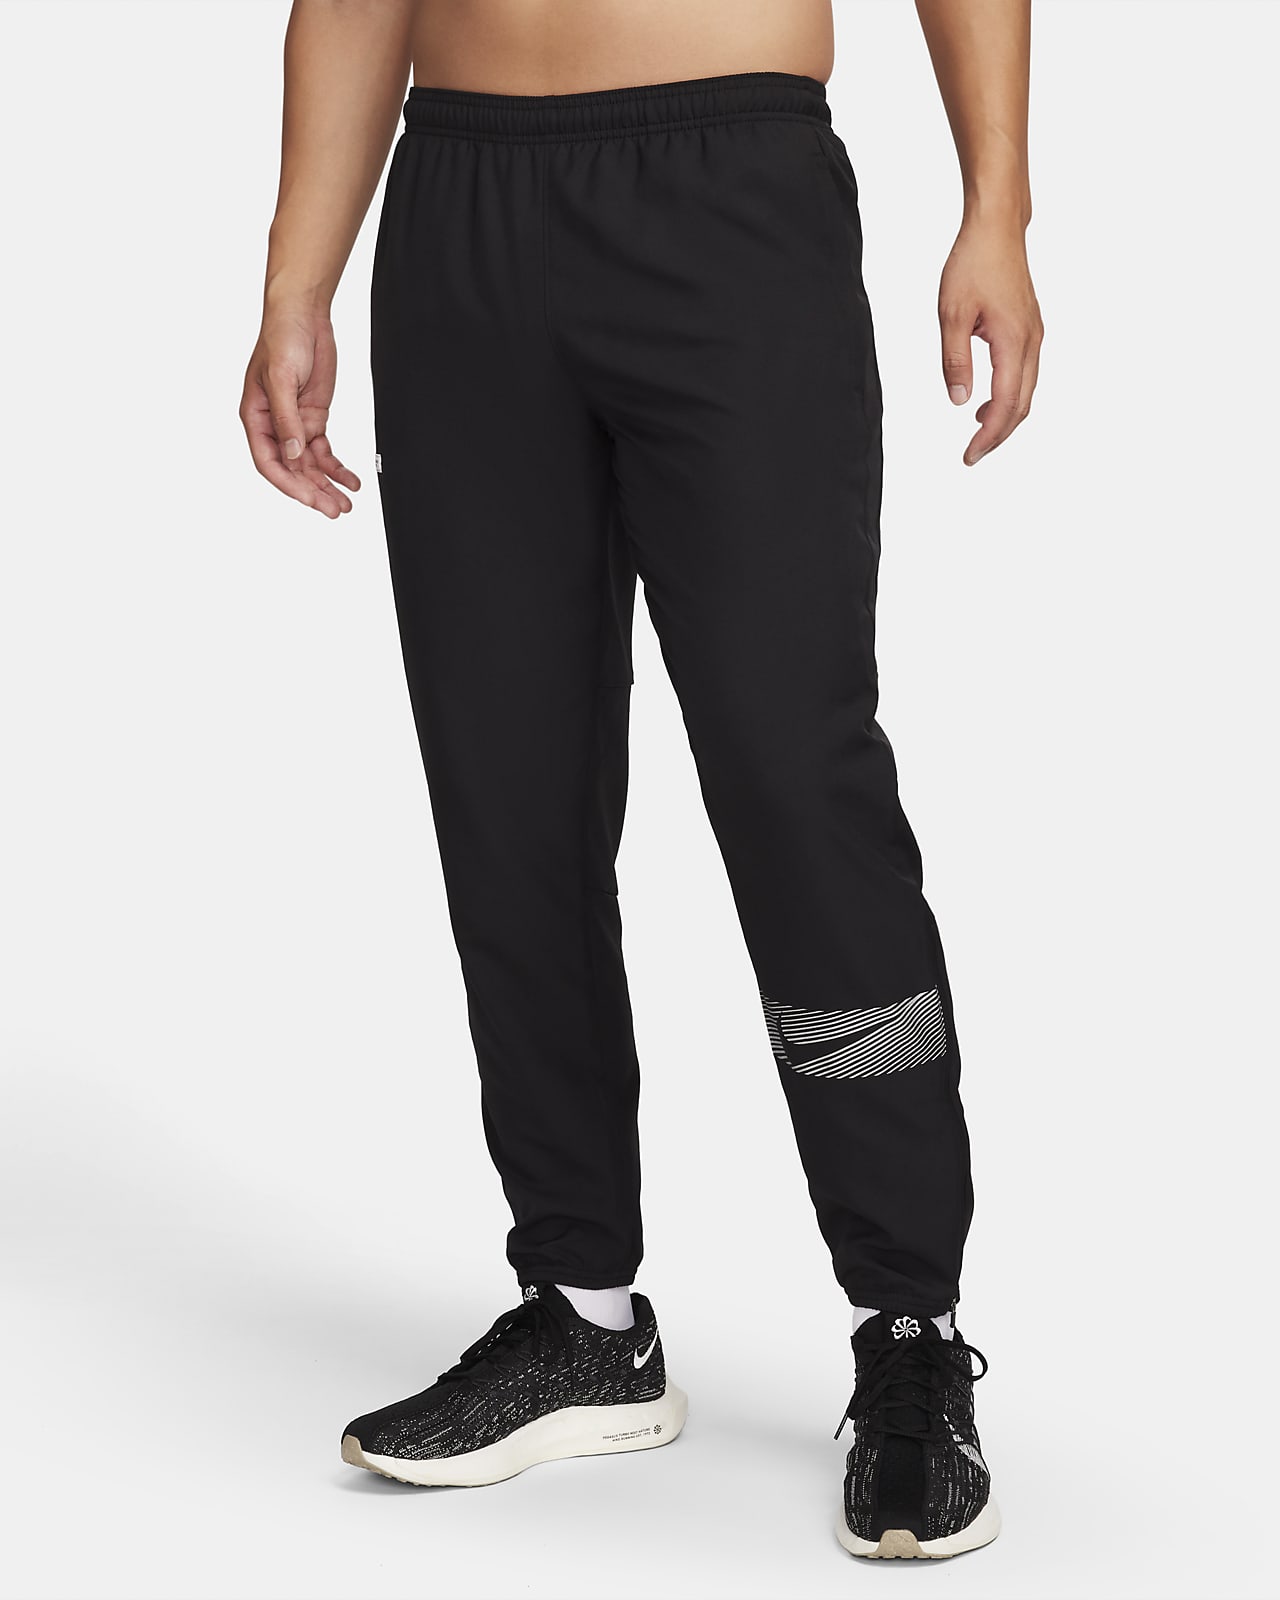 Ανδρικό υφαντό παντελόνι για τρέξιμο Dri-FIT Nike Challenger Flash